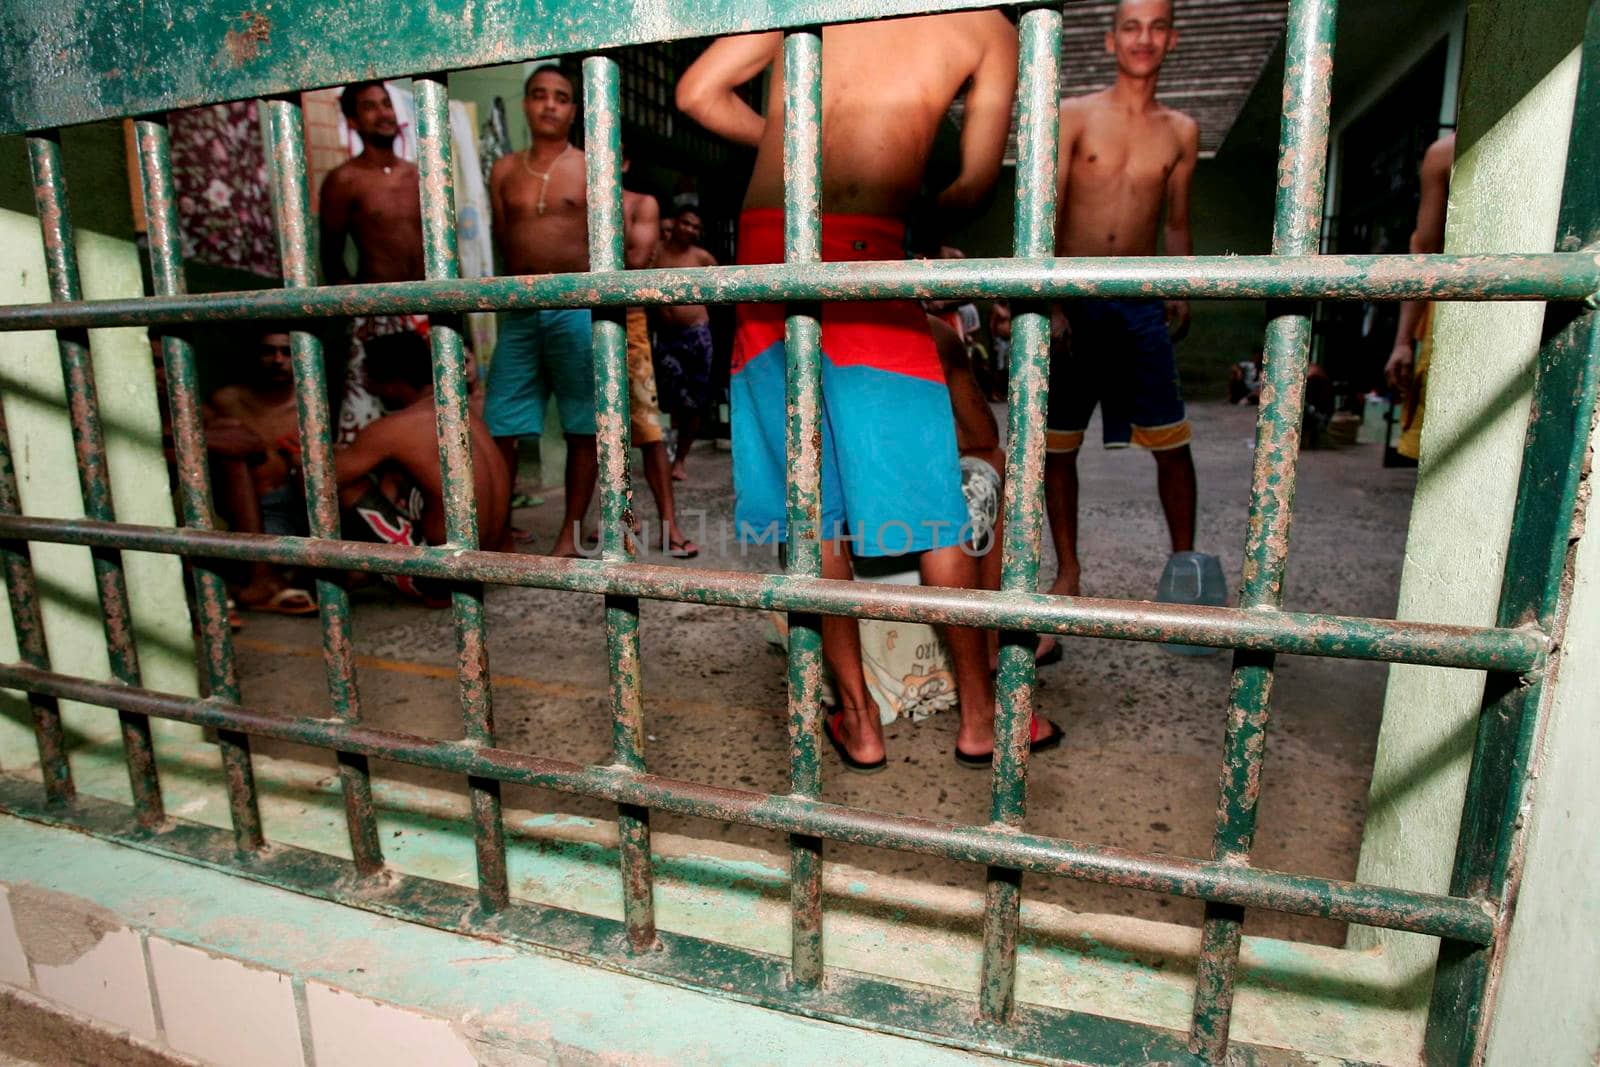 teixeira de freitas, bahia / brazil - november 24, 2009: prisoners are seen in cells in the Teixeira de Freitas city complex.
